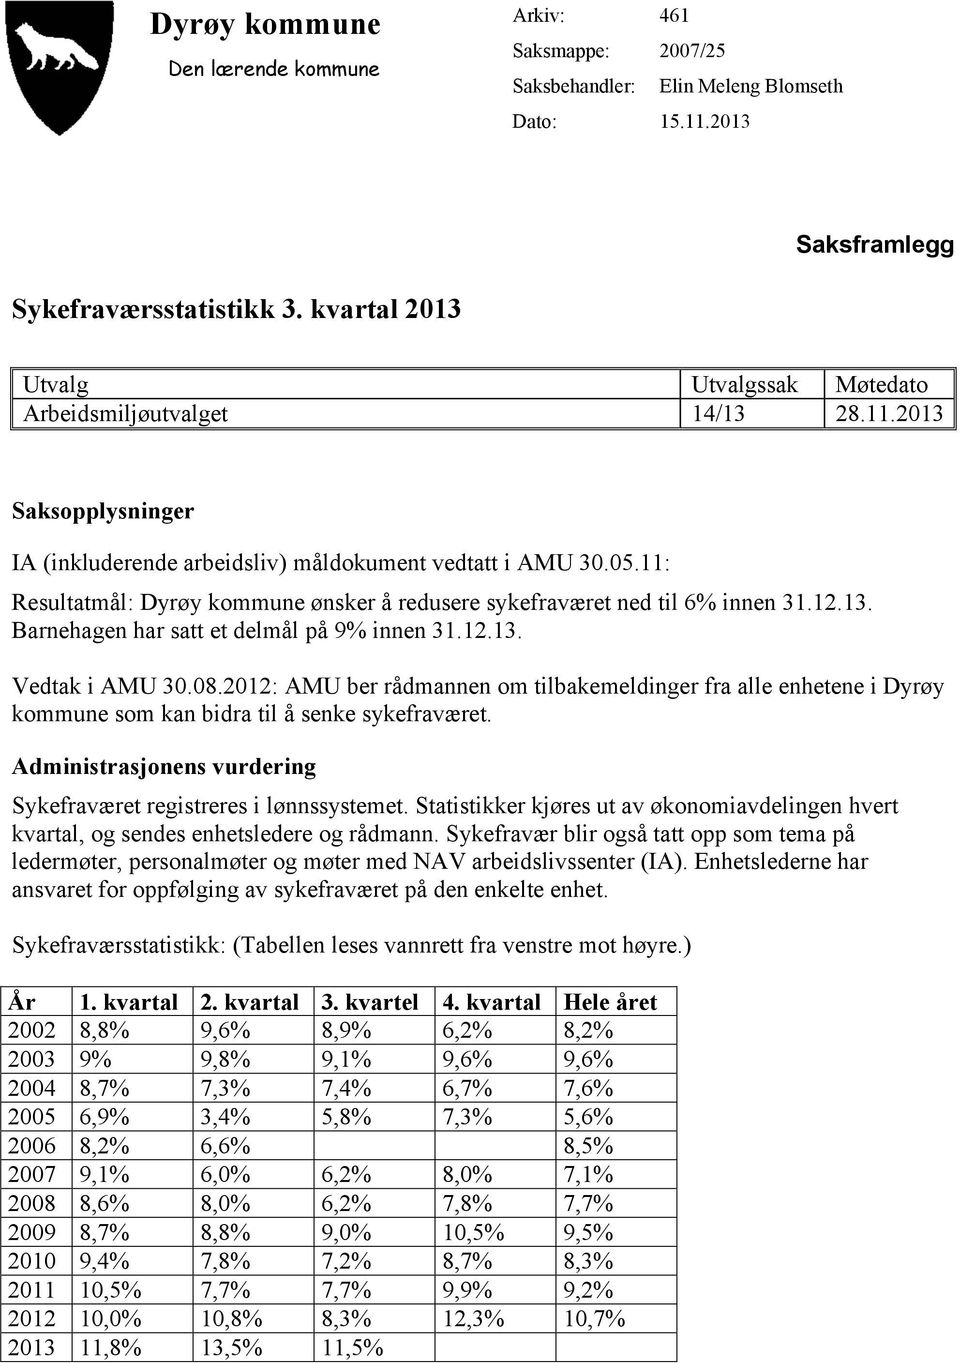 11: Resultatmål: Dyrøy kommune ønsker å redusere sykefraværet ned til 6% innen 31.12.13. Barnehagen har satt et delmål på 9% innen 31.12.13. Vedtak i AMU 30.08.